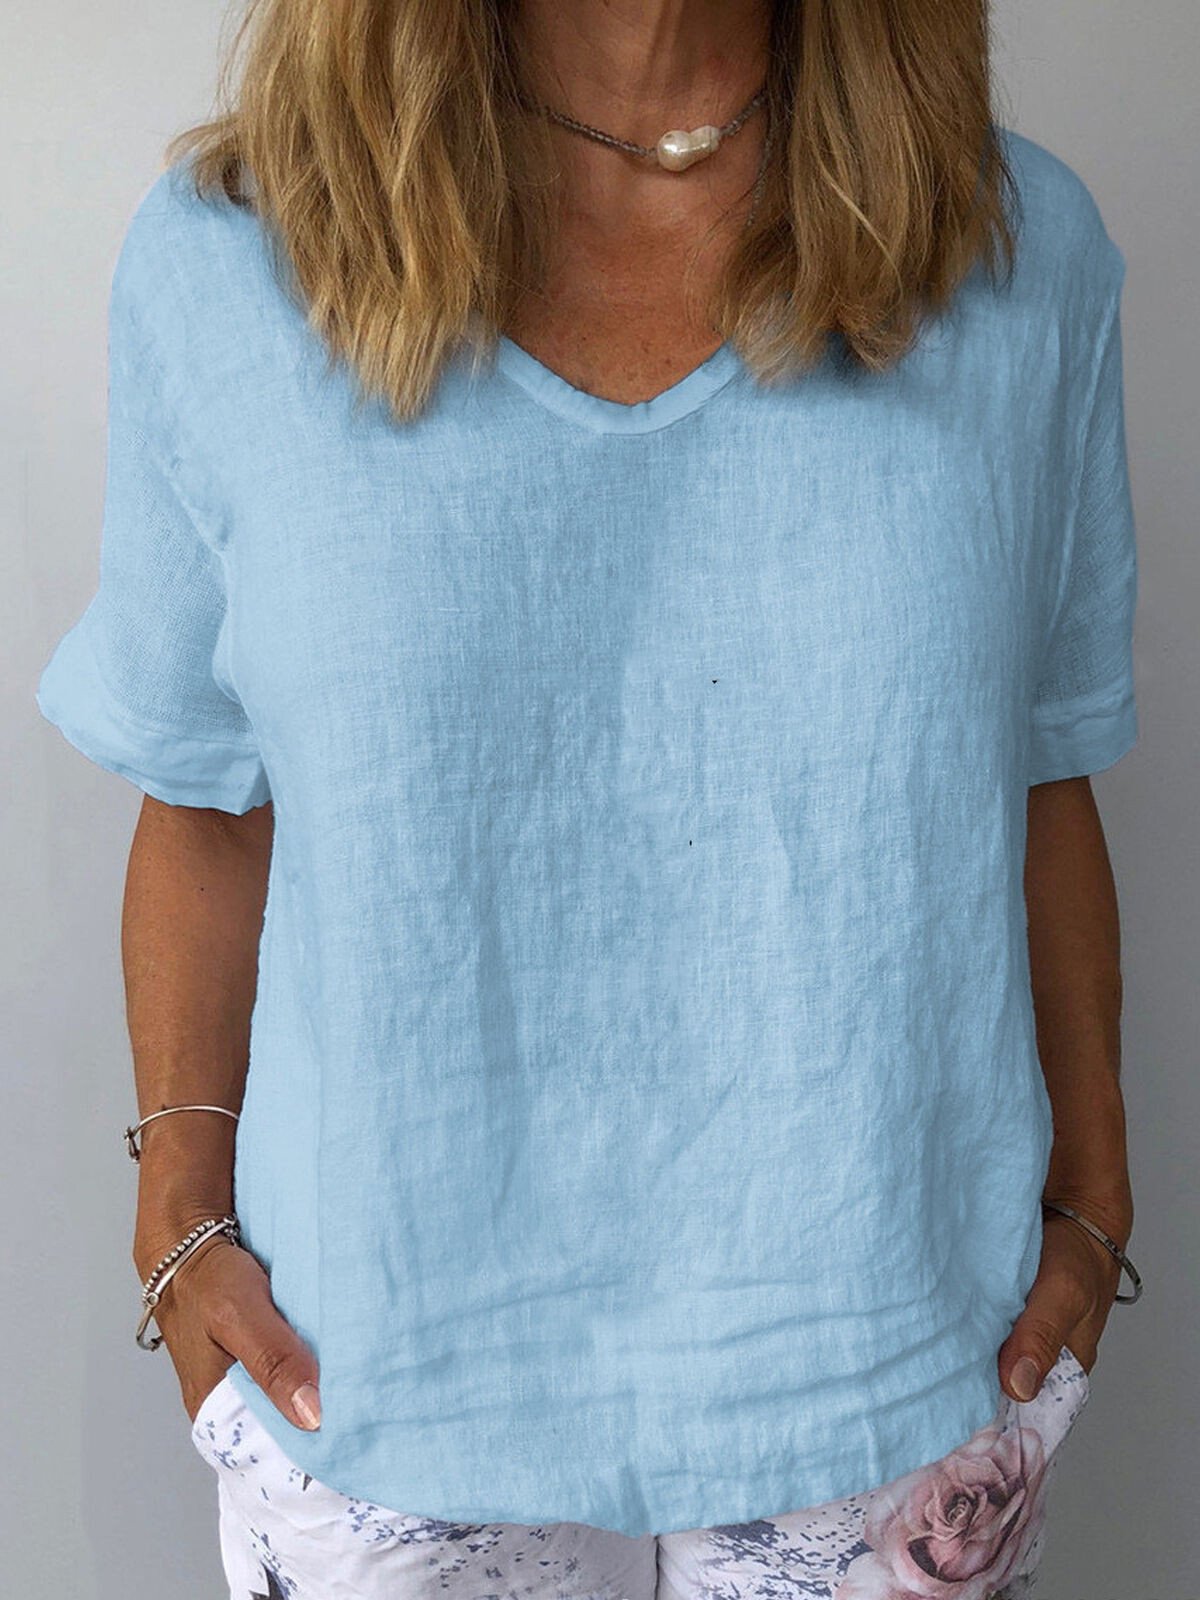 NTG Fad Blue / S Women's Pure Color Casual Cotton Shirt